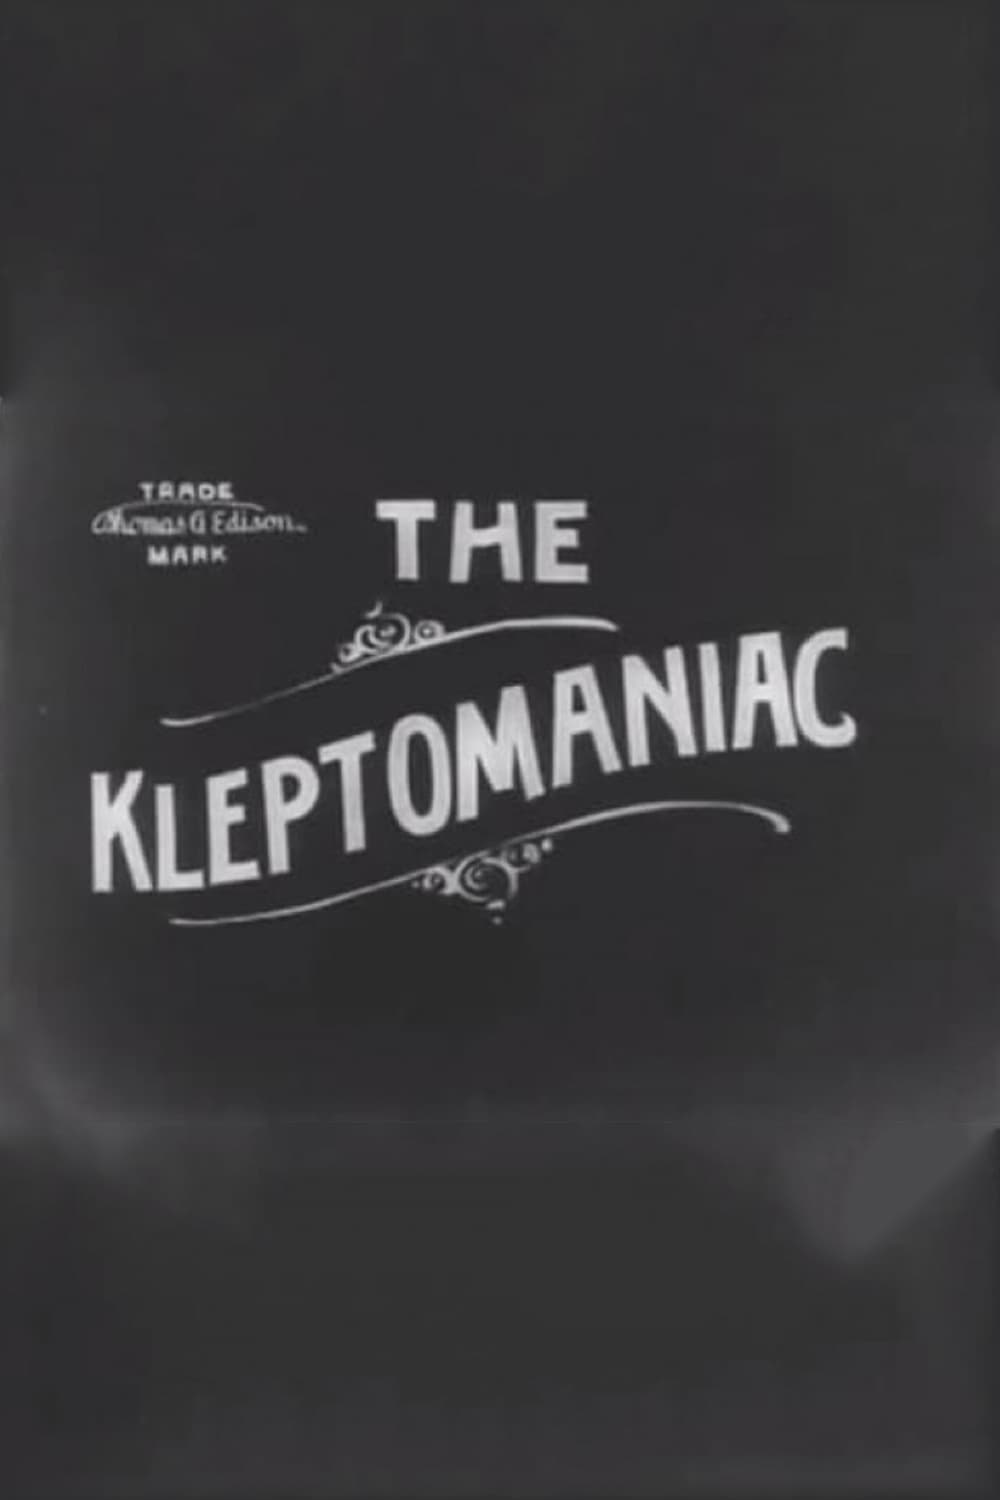 The Kleptomaniac